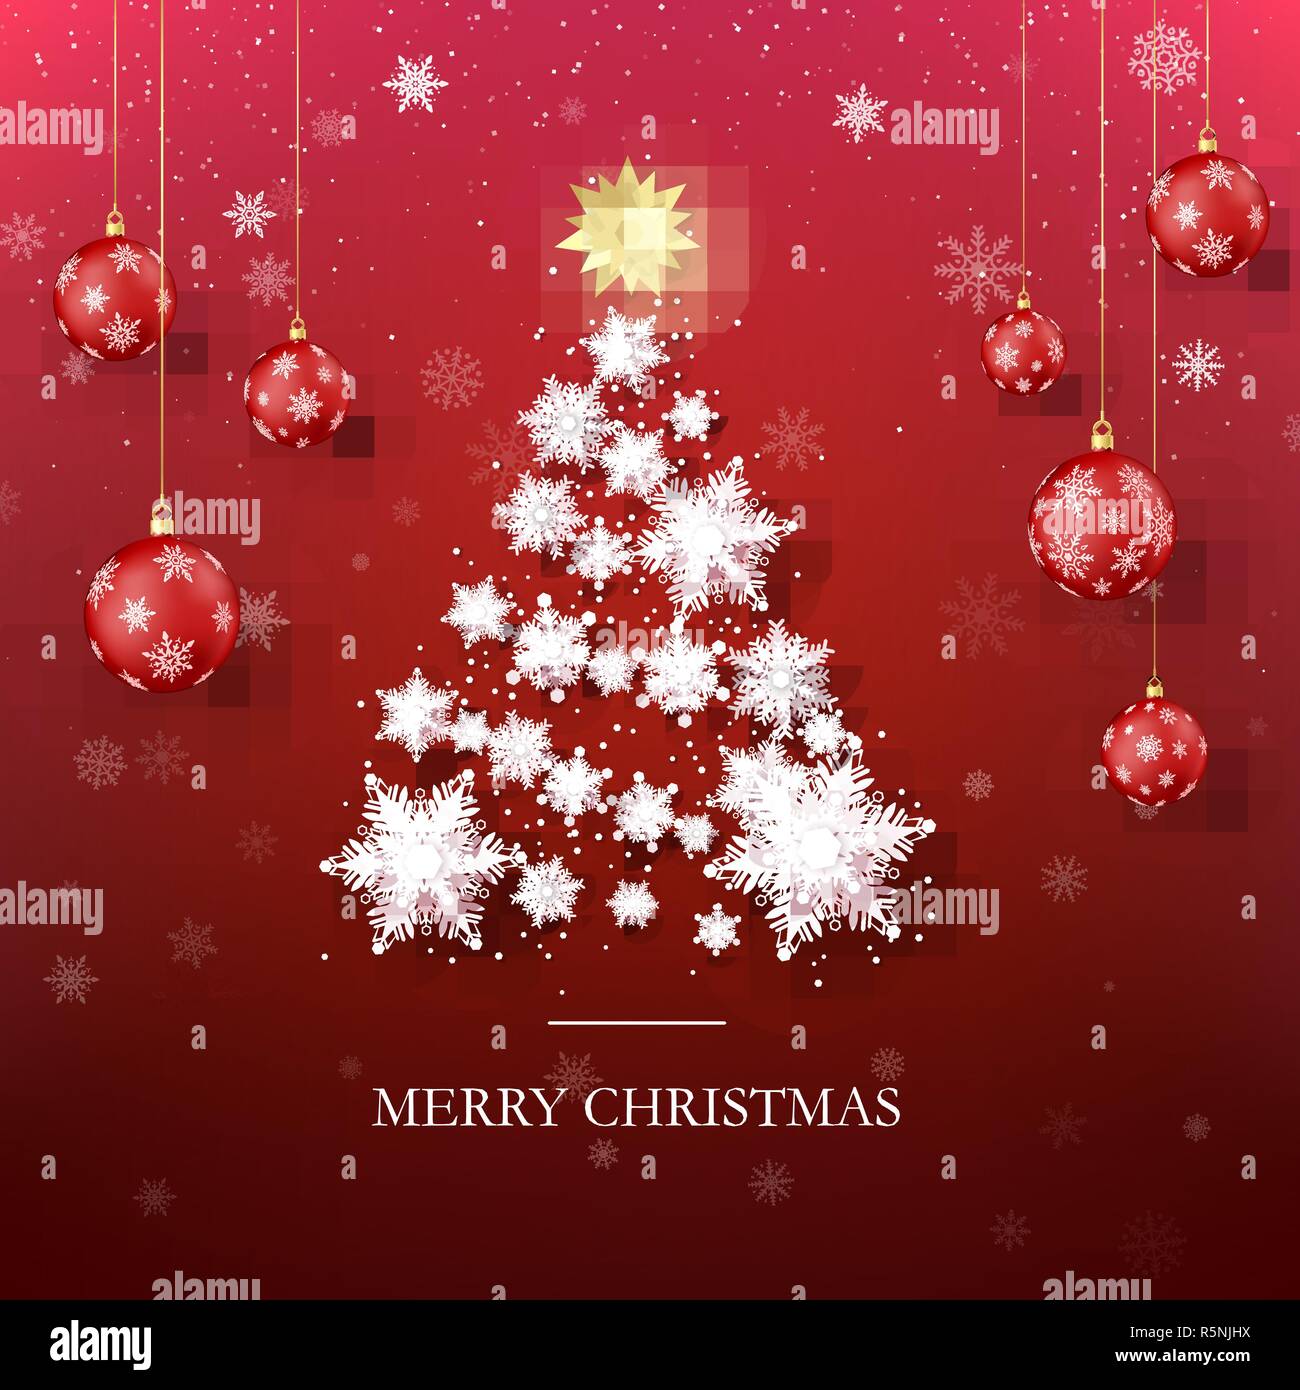 Weihnachtsbaum Grußkarte. Neues Jahr Baum Silhouette aus Papier Schneeflocken und Roten Weihnachtskugeln für den Hintergrund. Abstrakte Feiertag Illustration. Vec Stock Vektor